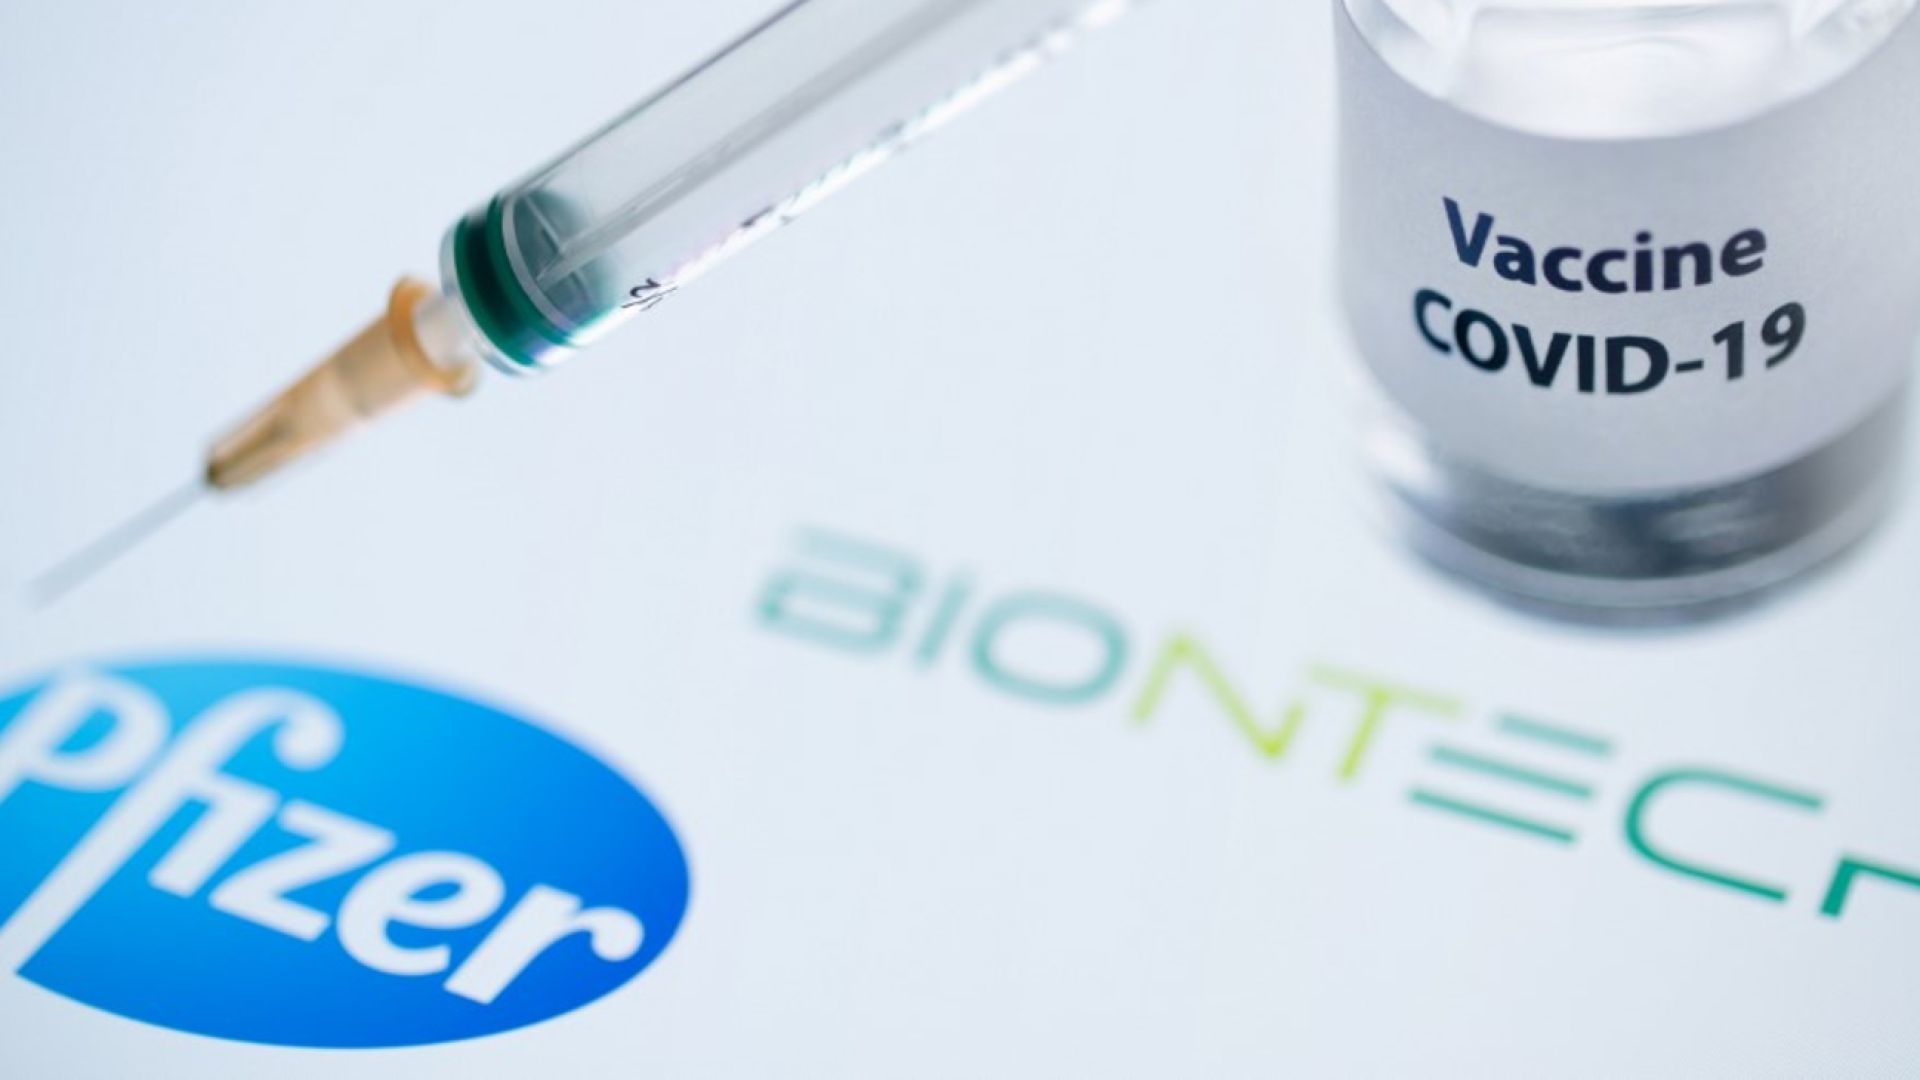 Europa evaluará desde el lunes 21 la vacuna contra el coronavirus de Pfizer- BioNTech | Perfil